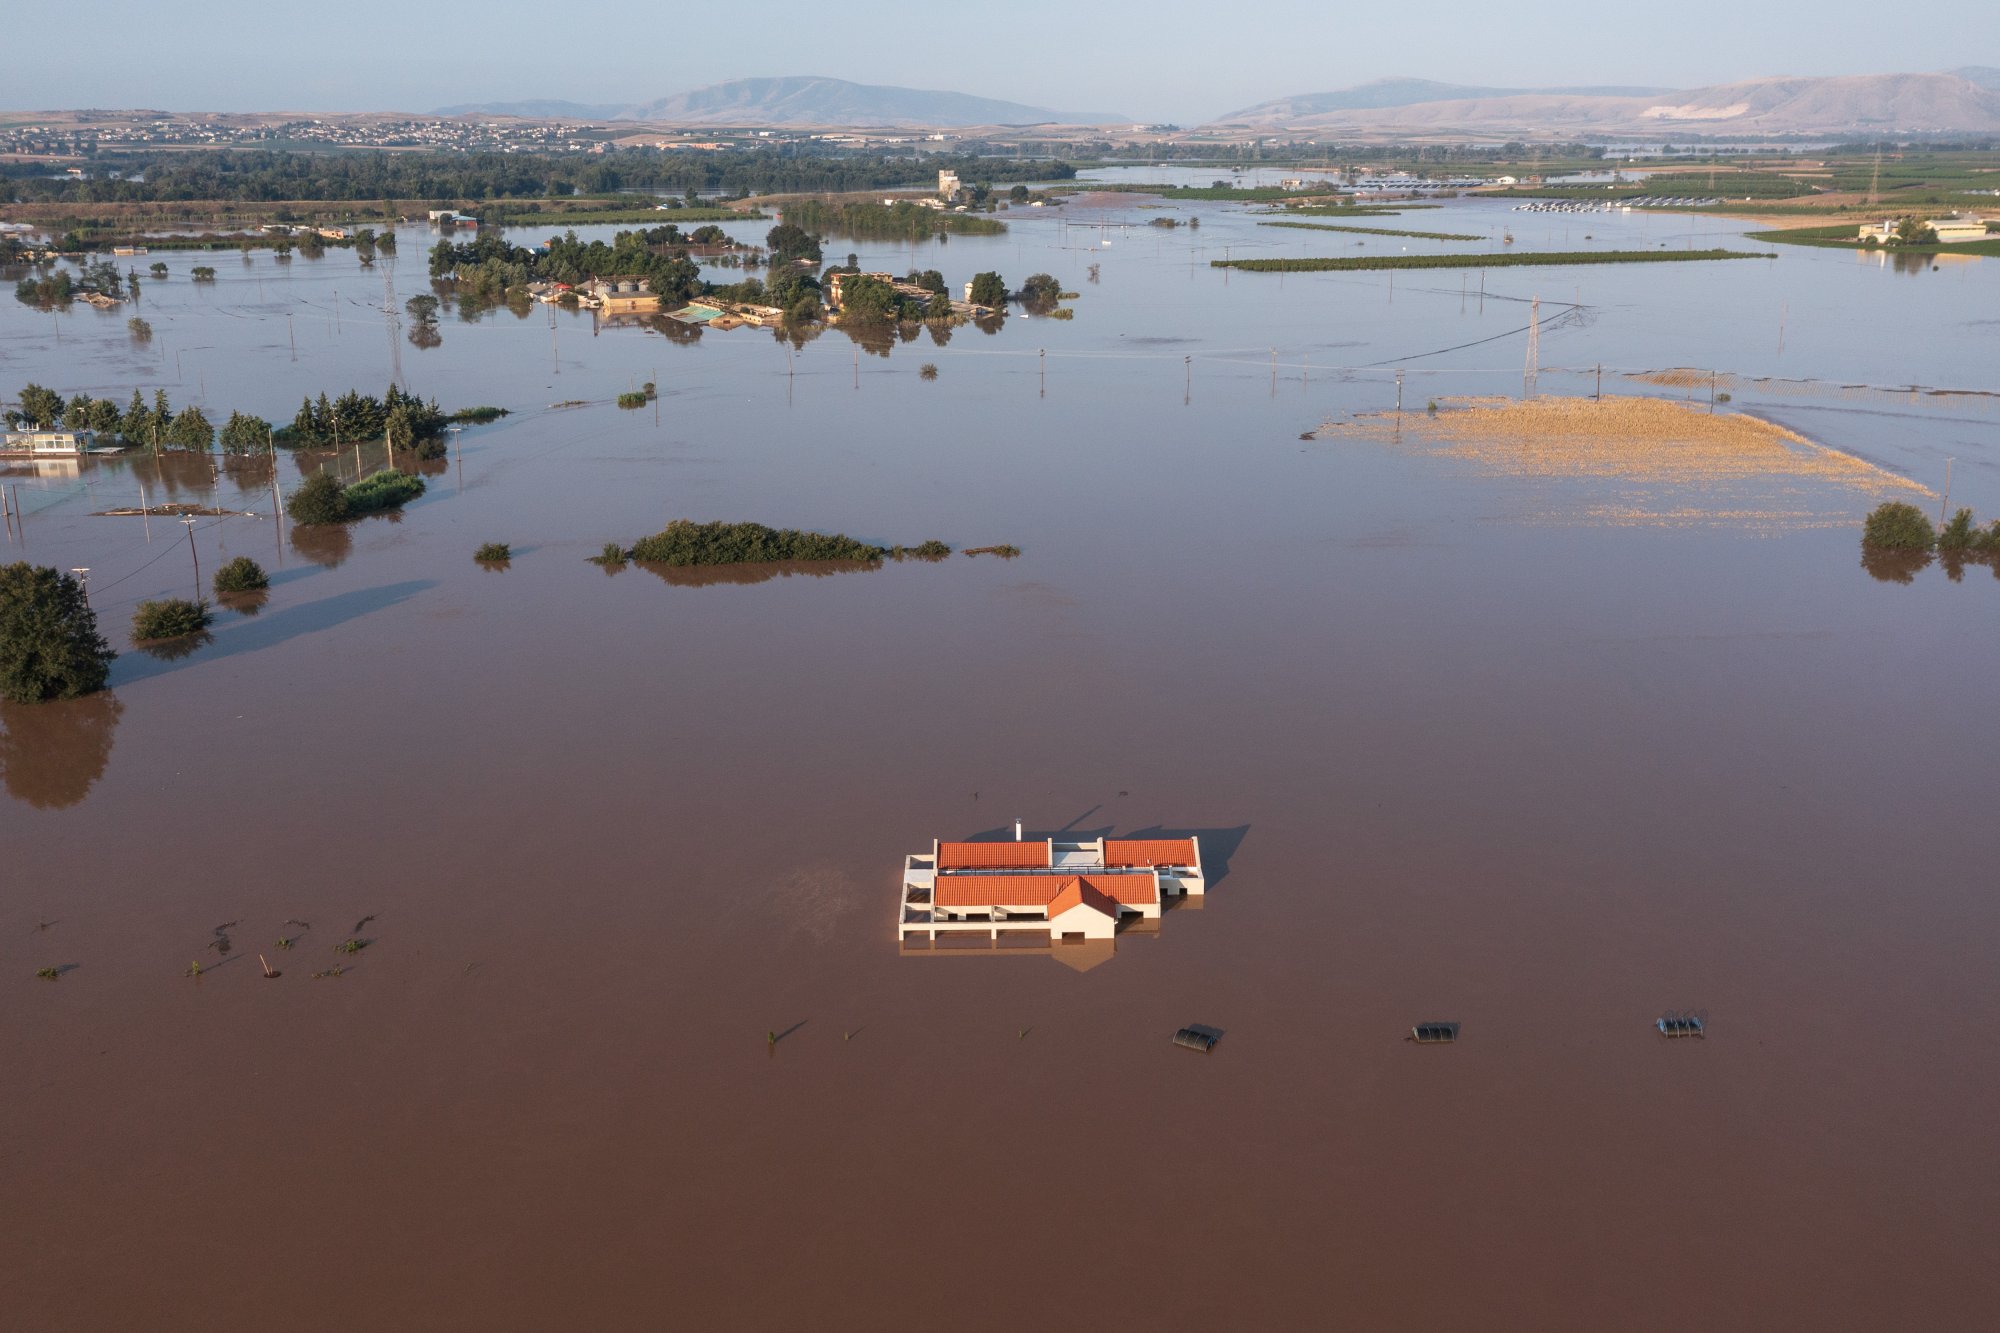 Κακοκαιρία Daniel: Αγωνία για τη Λάρισα - Αλλεπάλληλα μηνύματα από το 112, φόβοι για νέες πλημμύρες